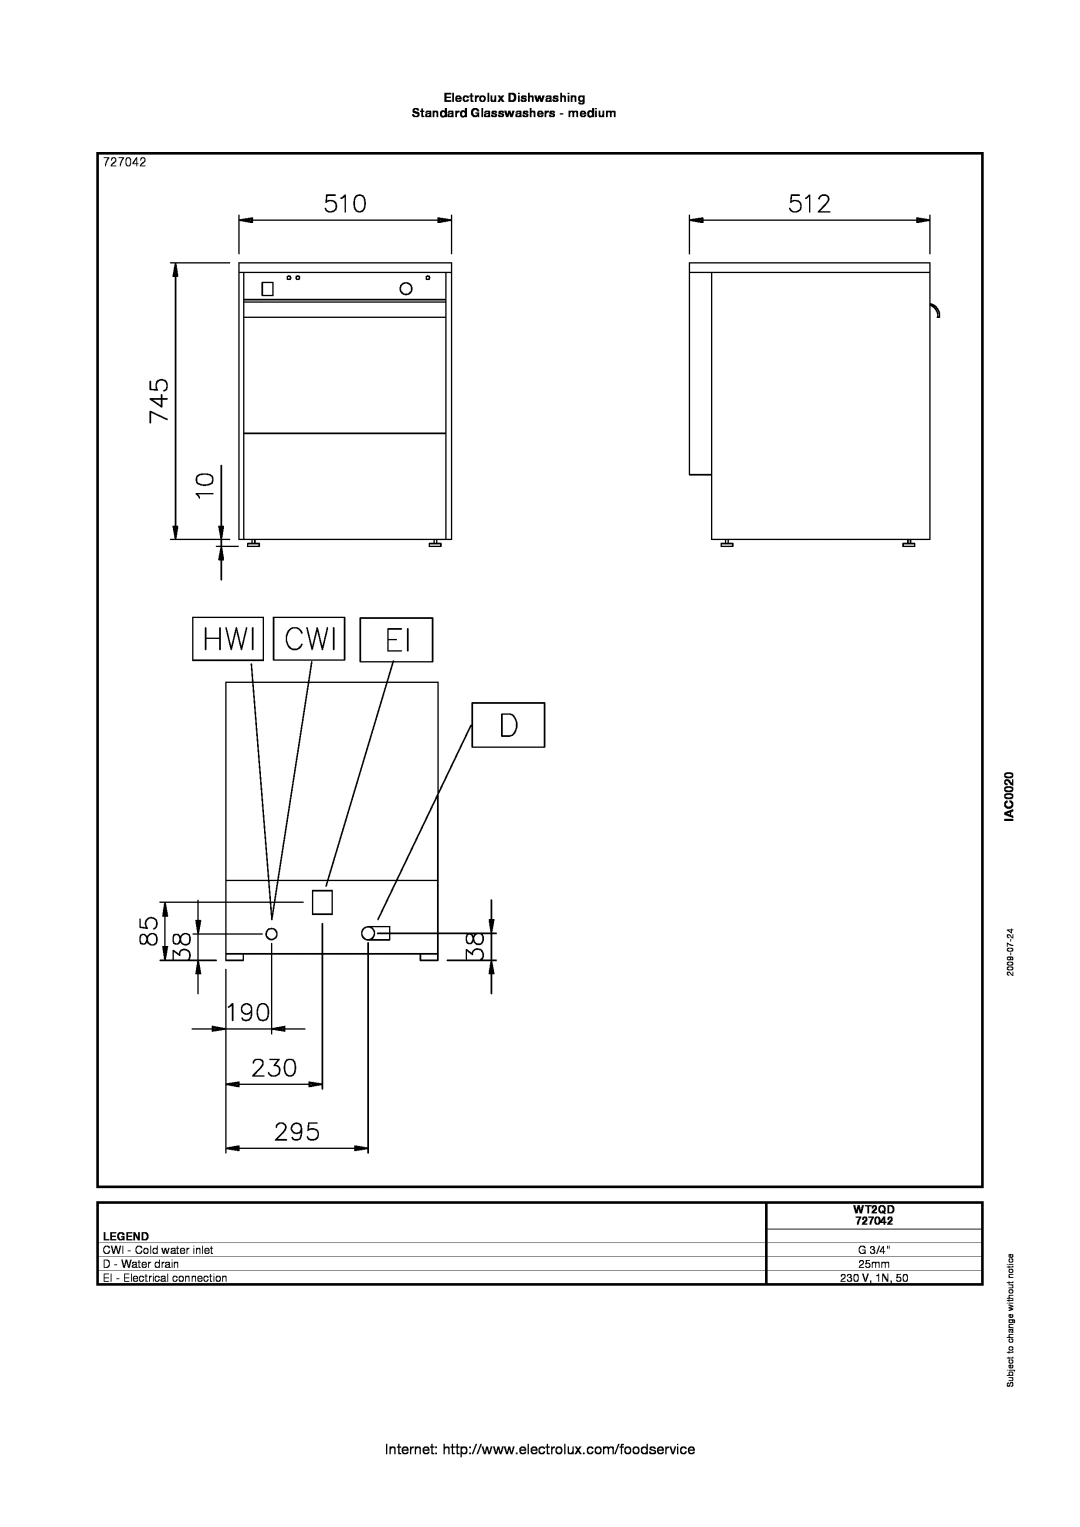 Electrolux 727042 Electrolux Dishwashing Standard Glasswashers - medium, IAC0020, WT2QD, Subject to change without notice 